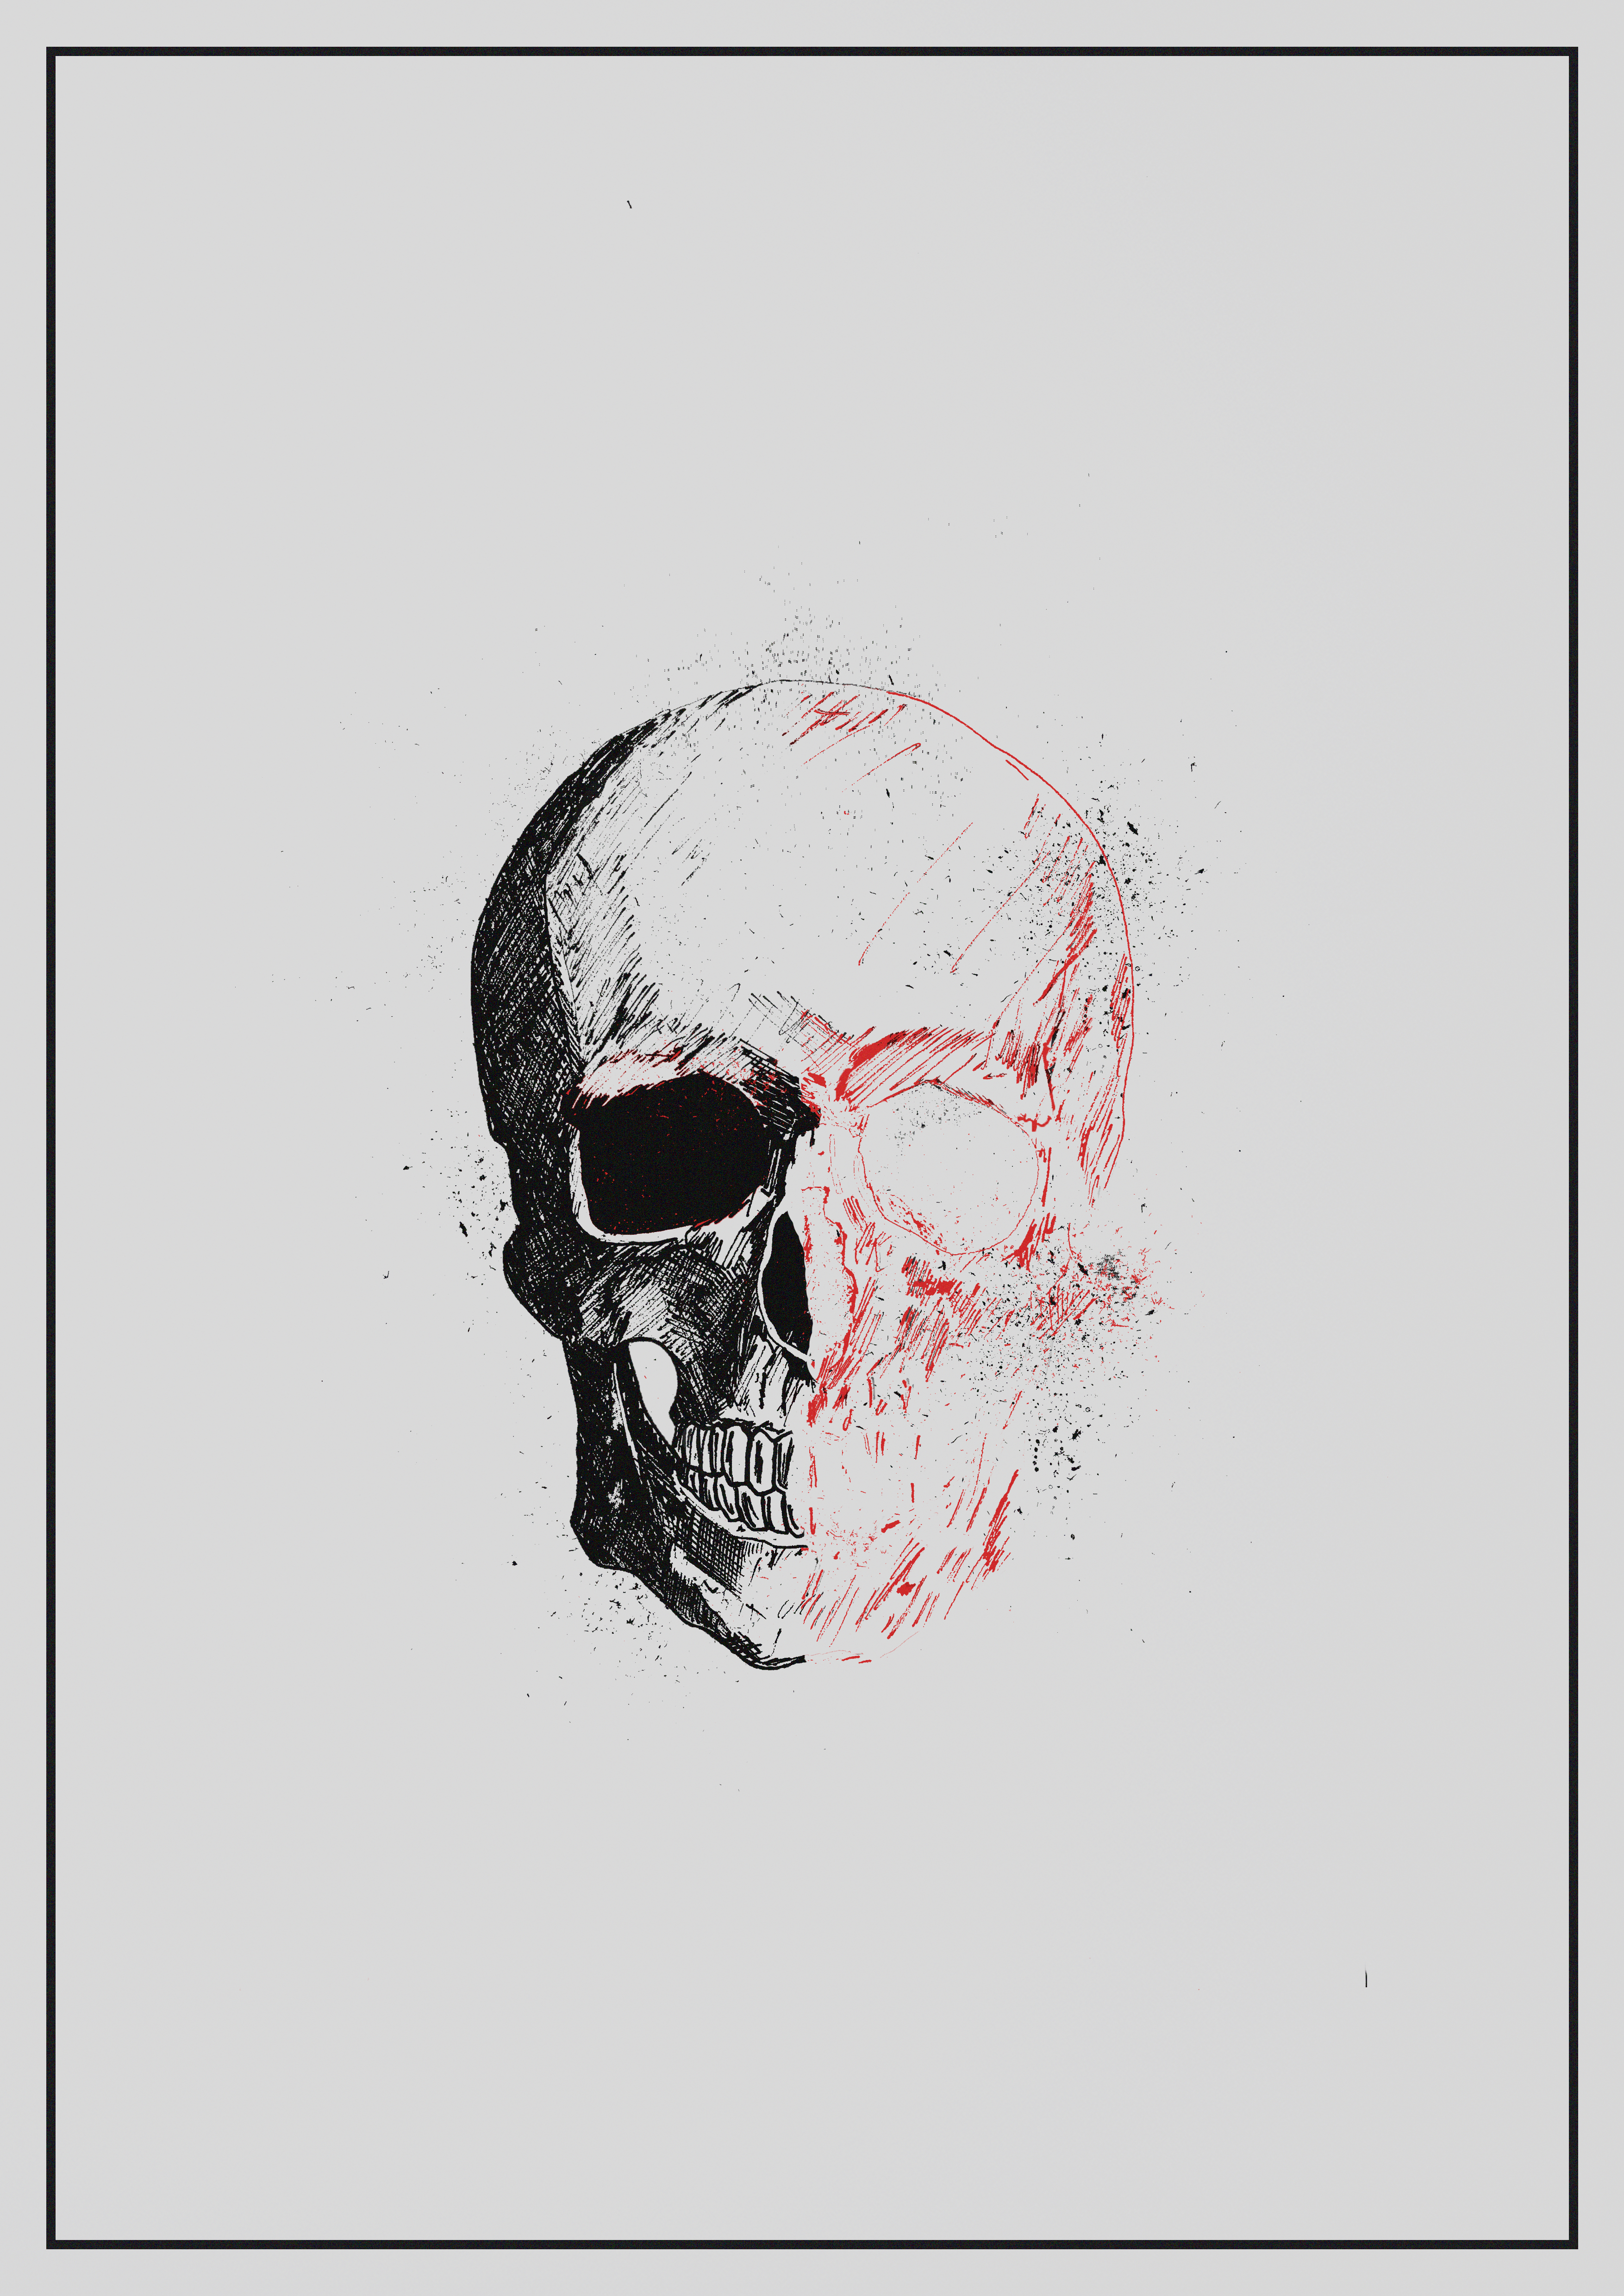 Dissected Skull Illustration Black and Red, splatter